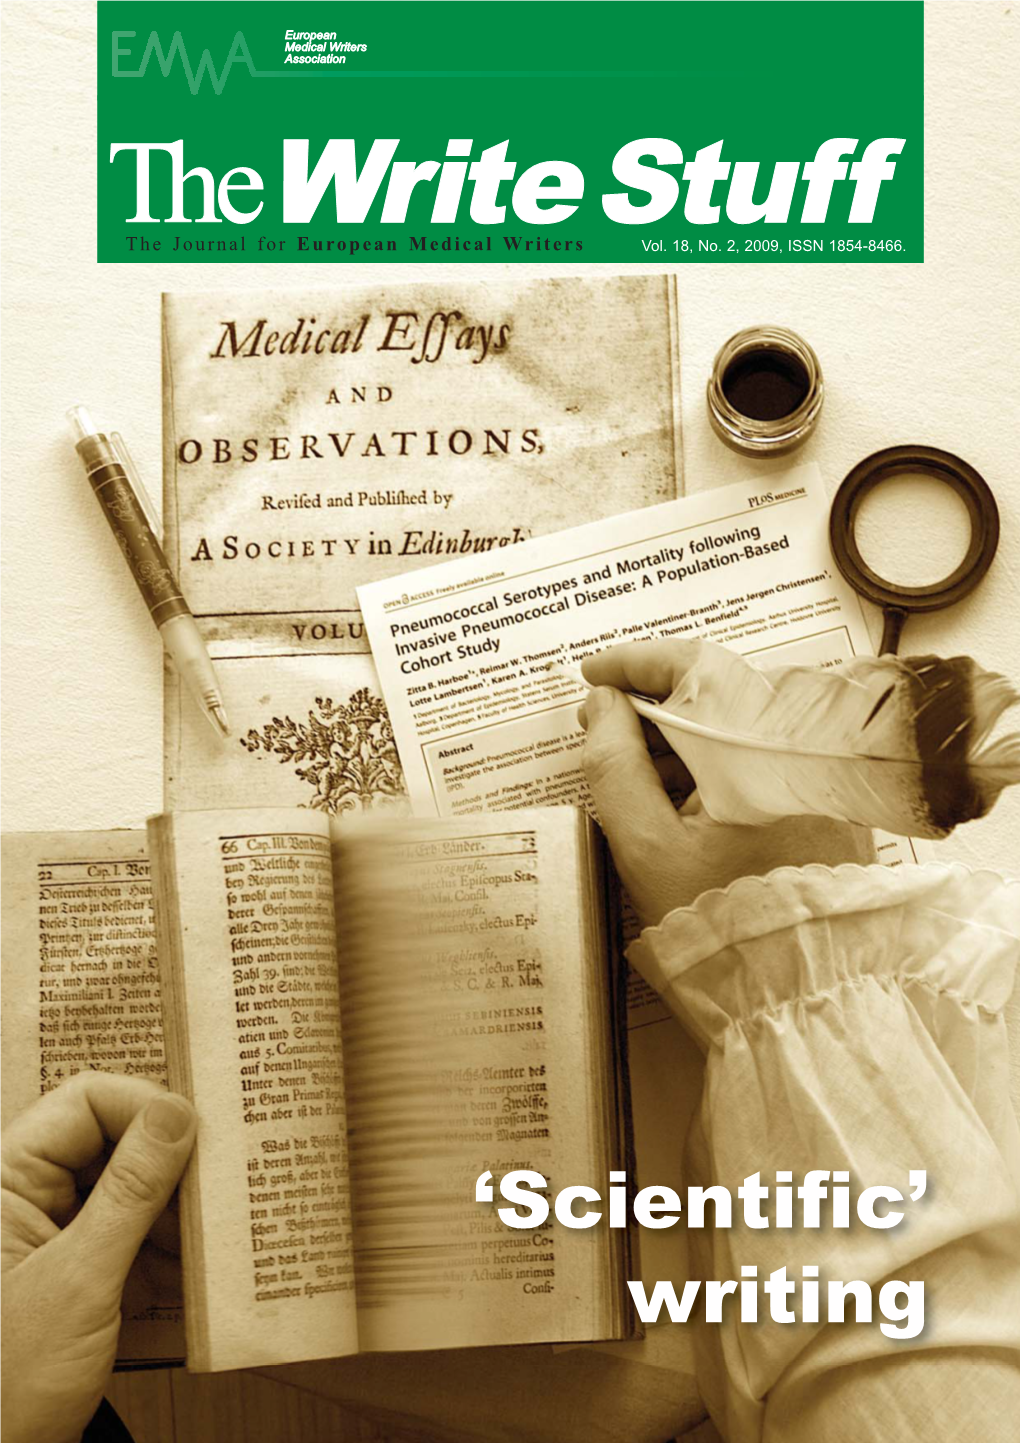 'Scientific' Writing